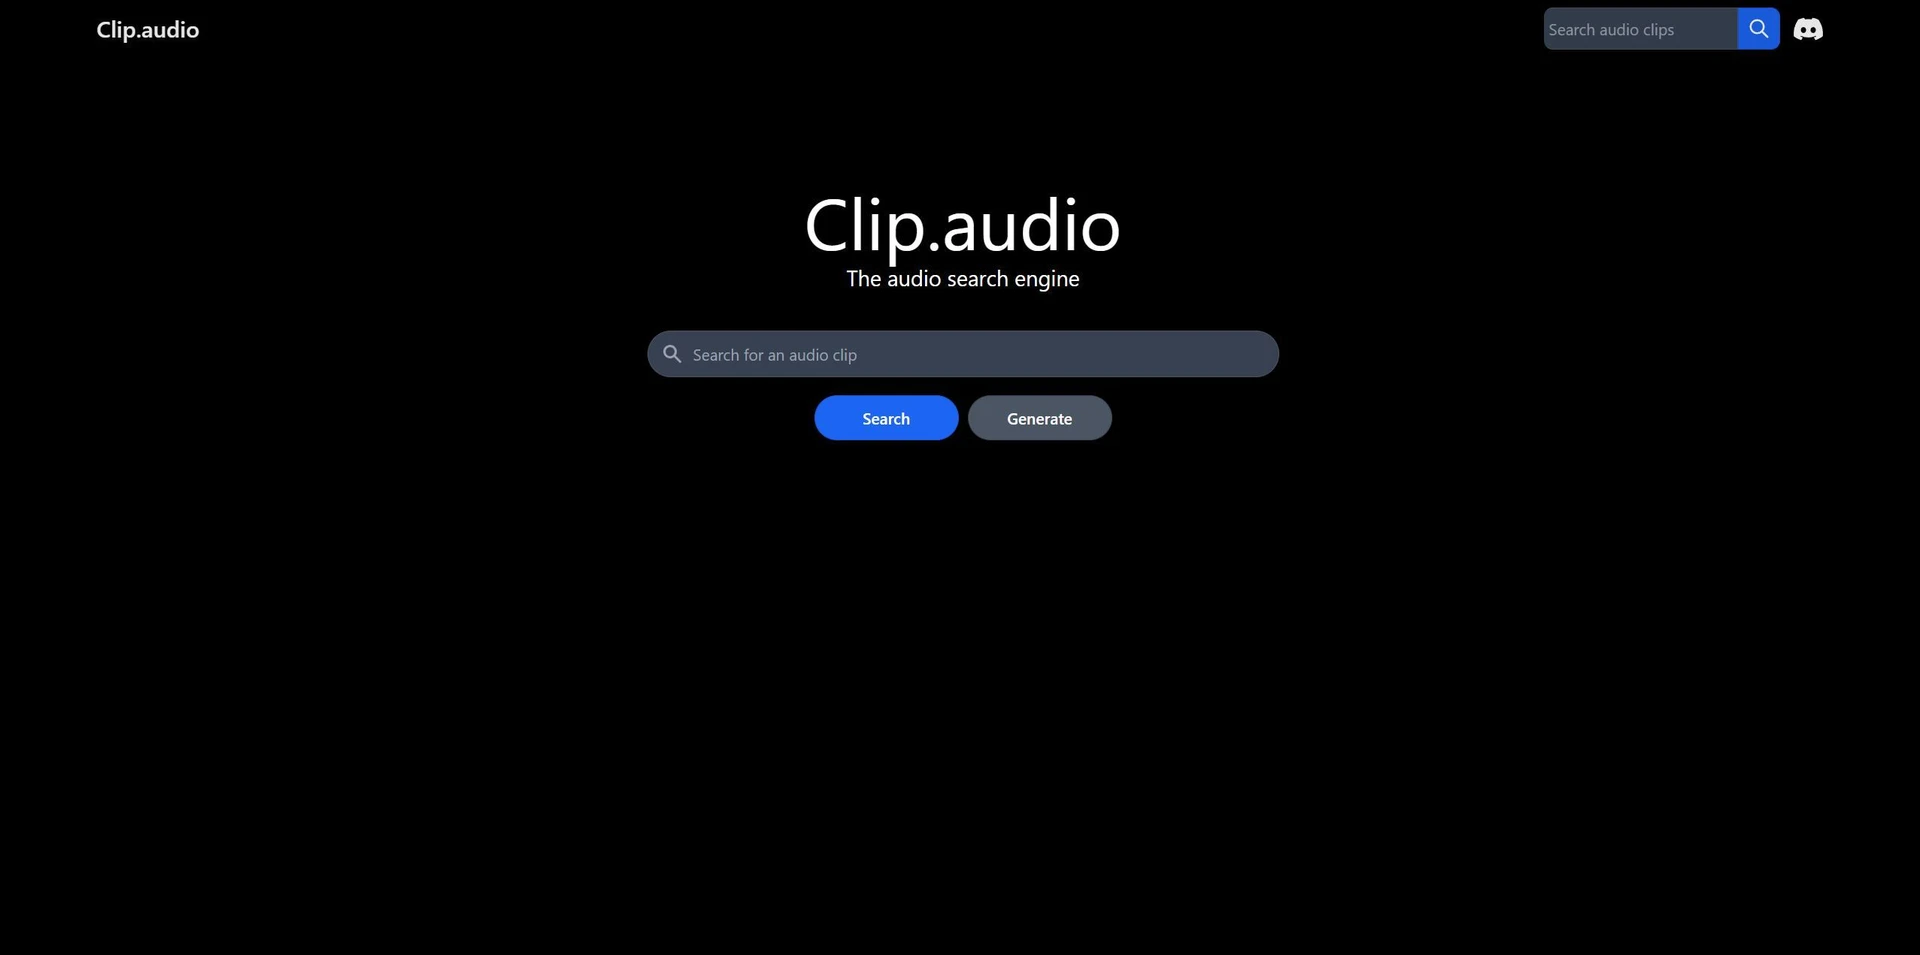 Clip.audiowebsite picture